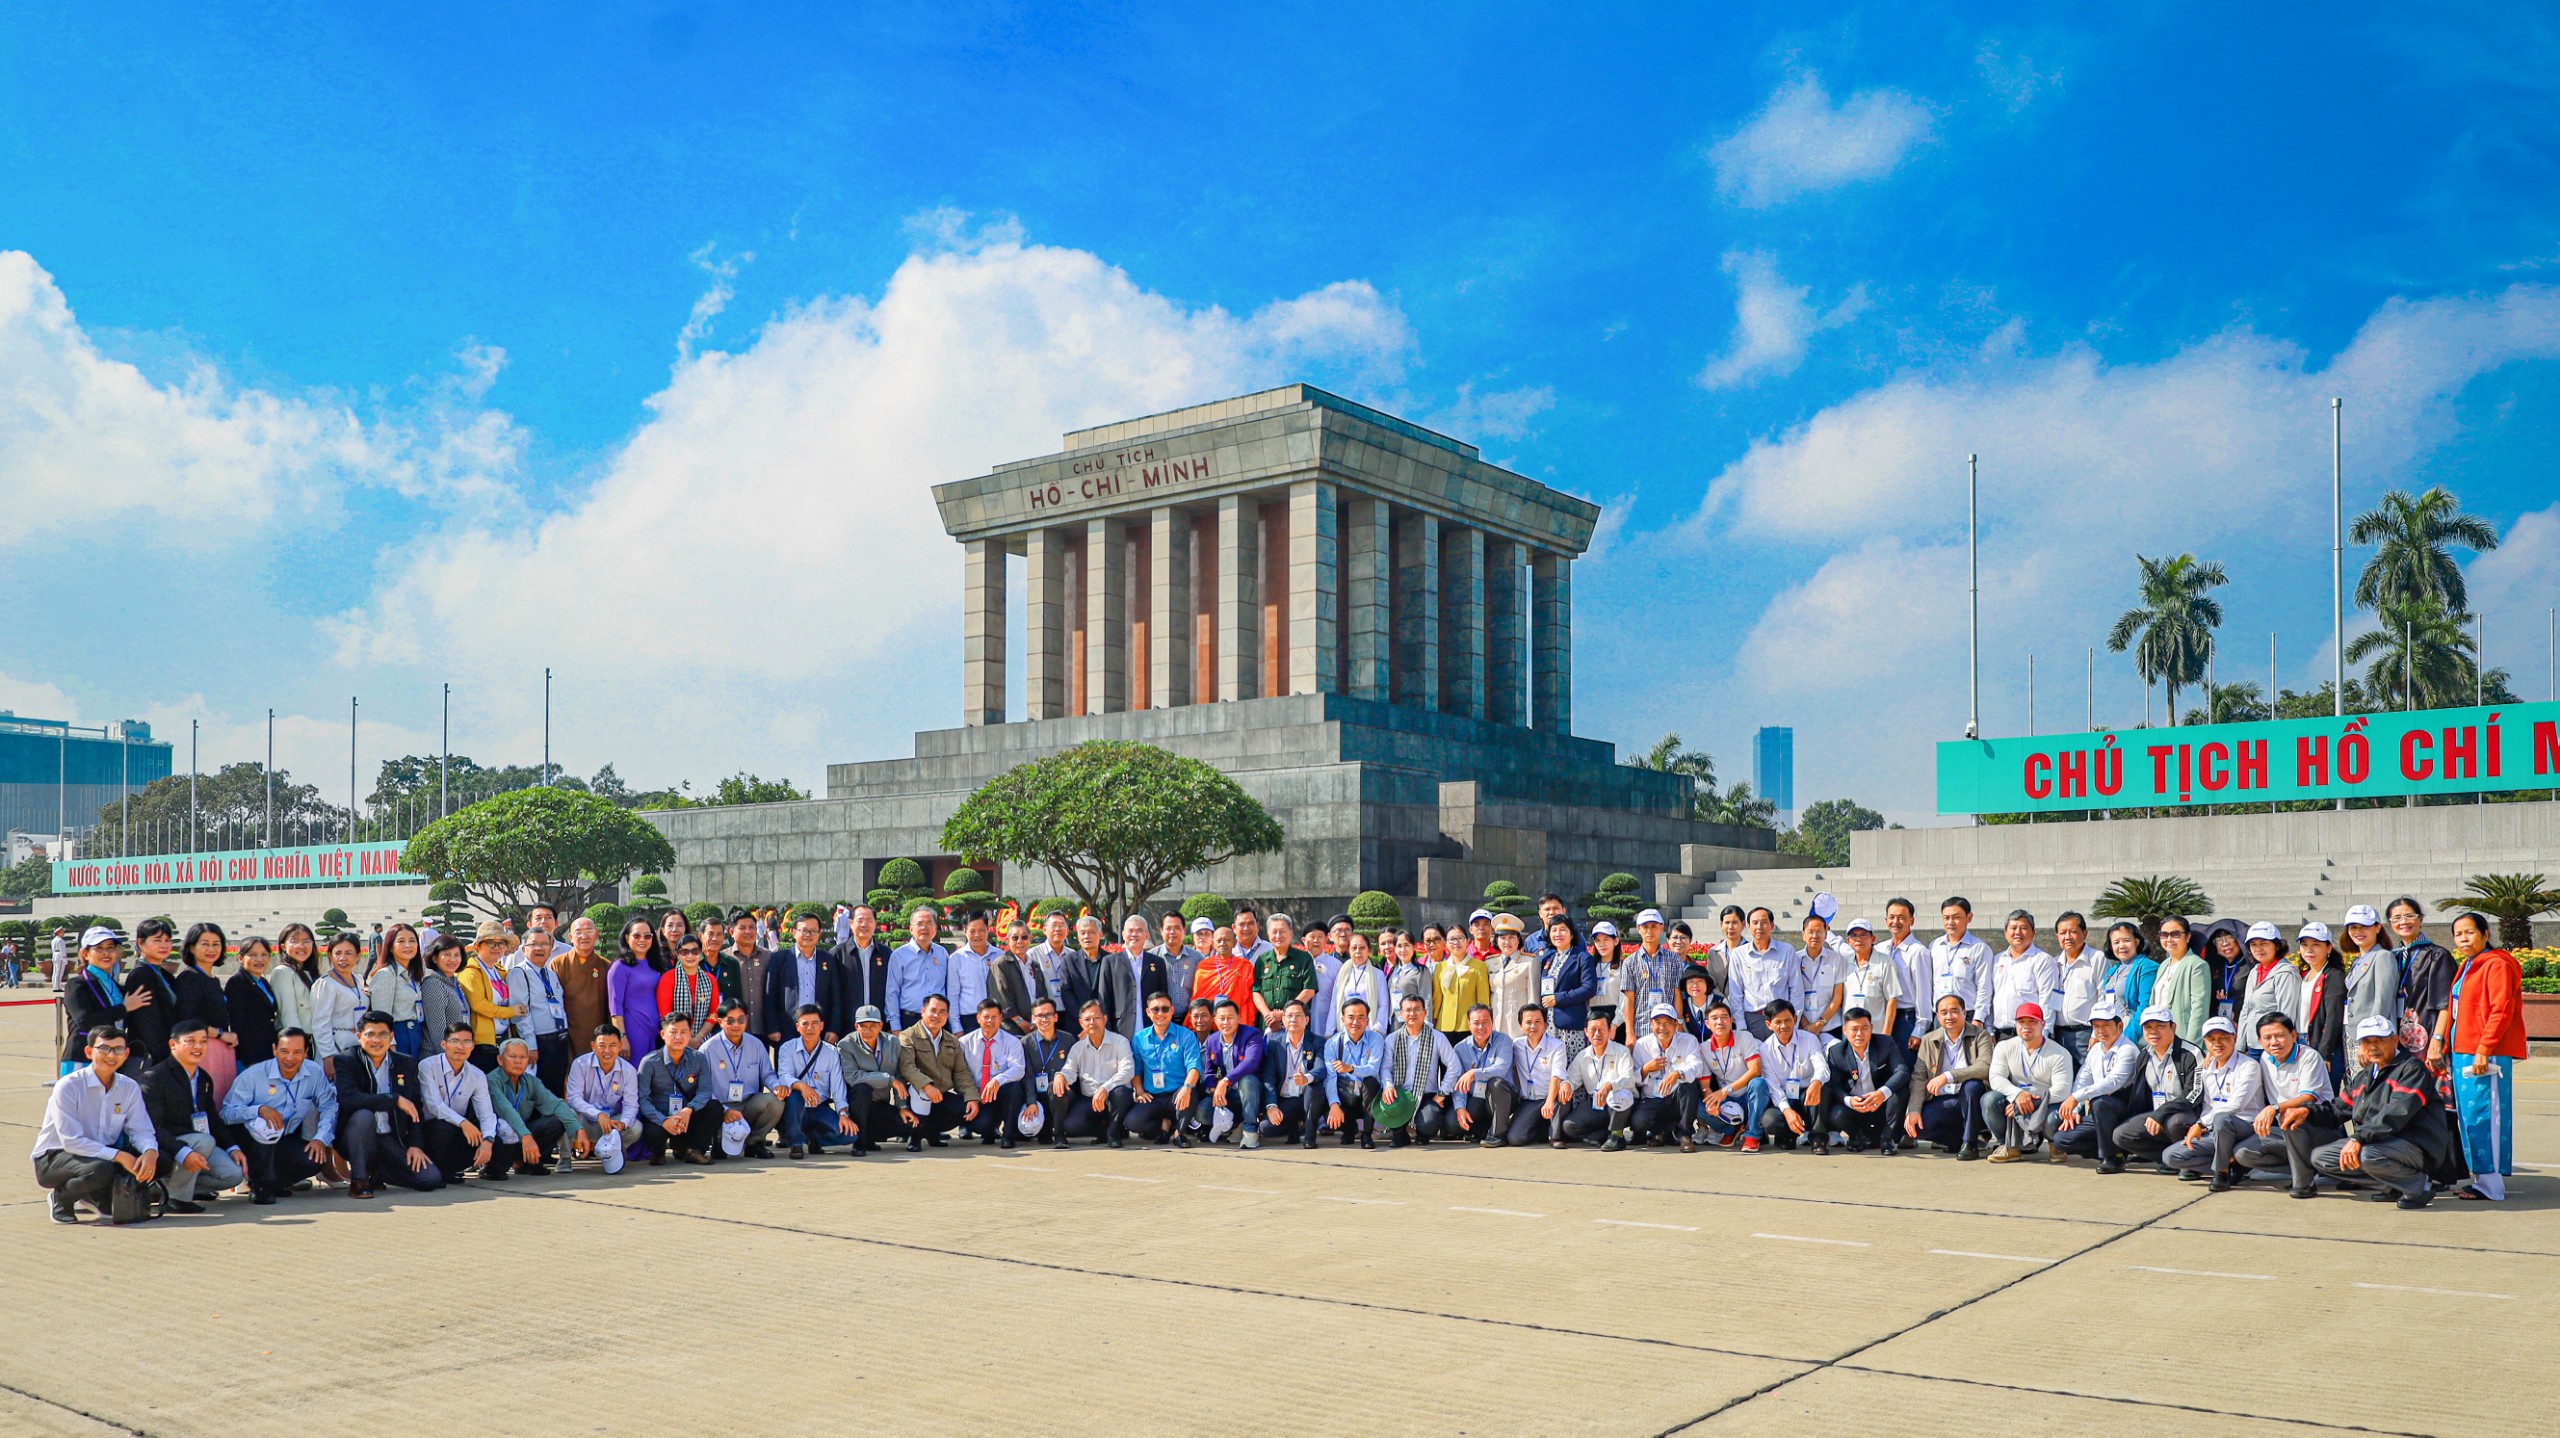 Đoàn đại biểu điển hình tiêu biểu có nhiều đóng góp trong quá trình xây dựng và phát triển TP. Cần Thơ dự lễ báo công tại Lăng Chủ tịch Hồ Chí Minh.